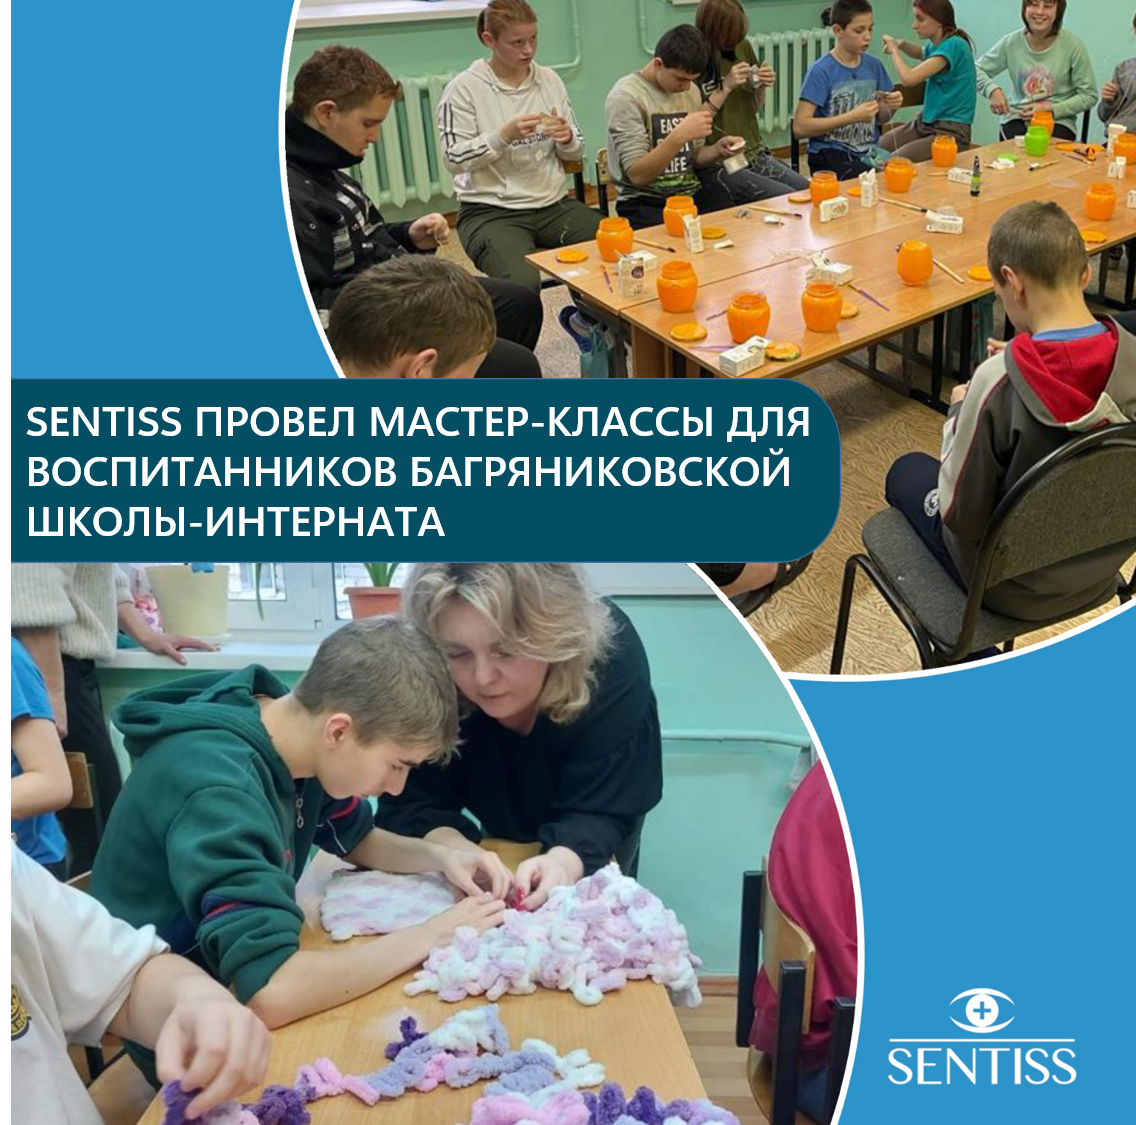 Компания Sentiss провела мастер-классы для учеников Багряниковской школы-интерната